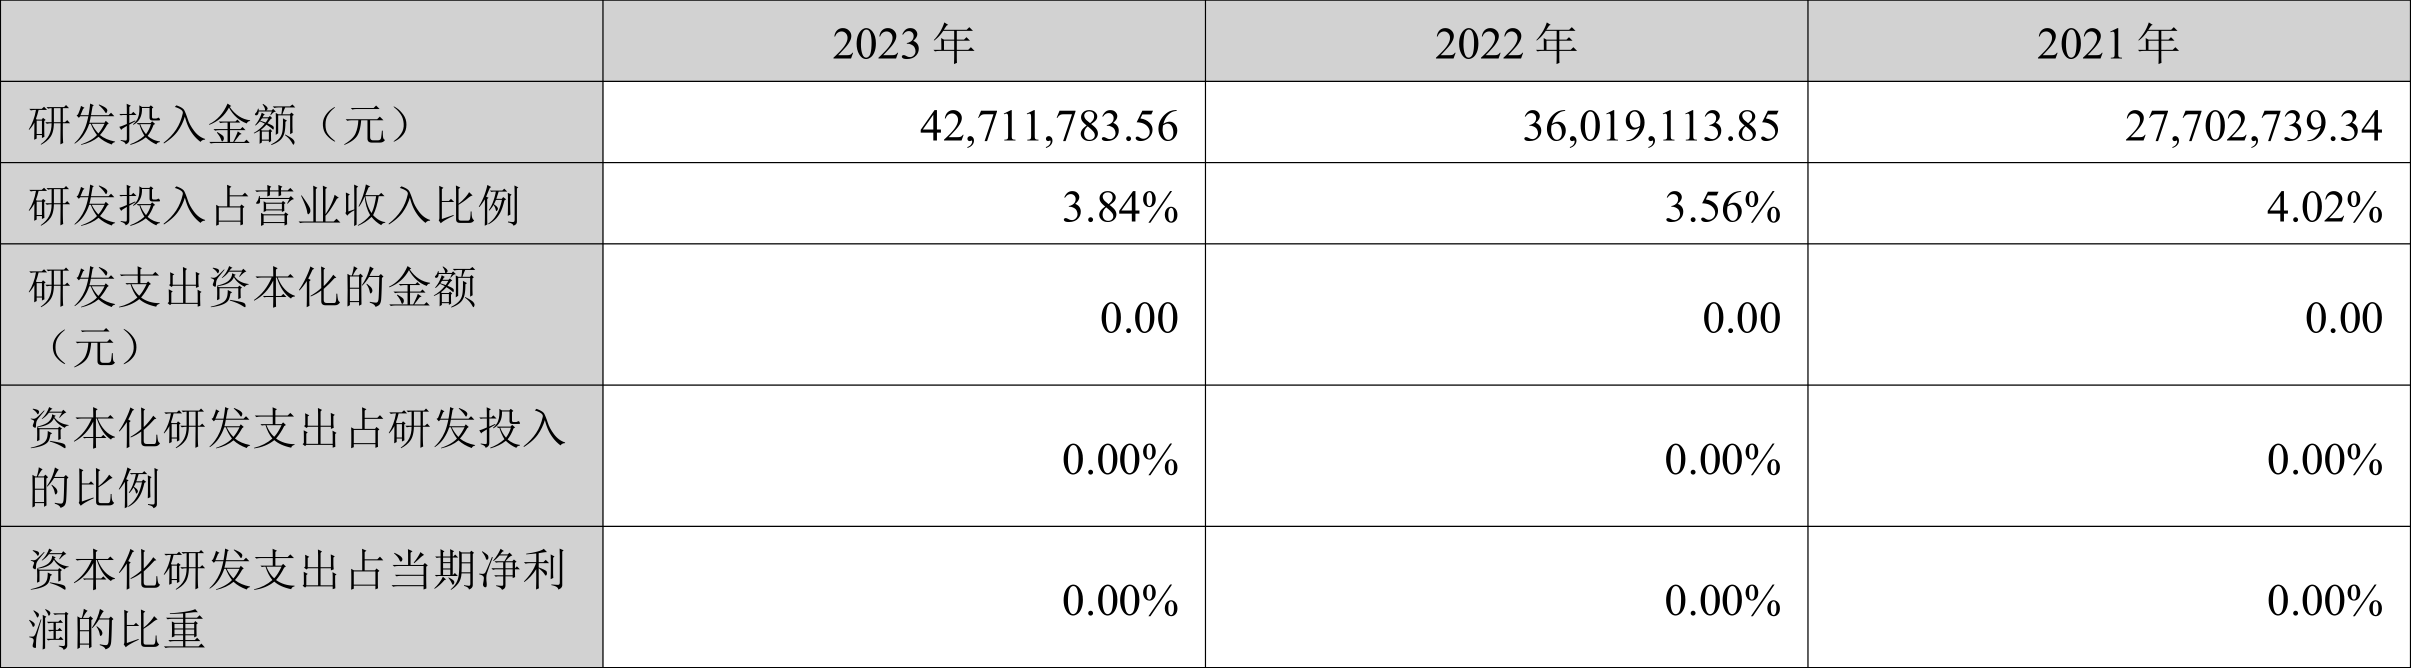 浙江力诺：2023年净利润同比增长0.24% 拟10派2.5元